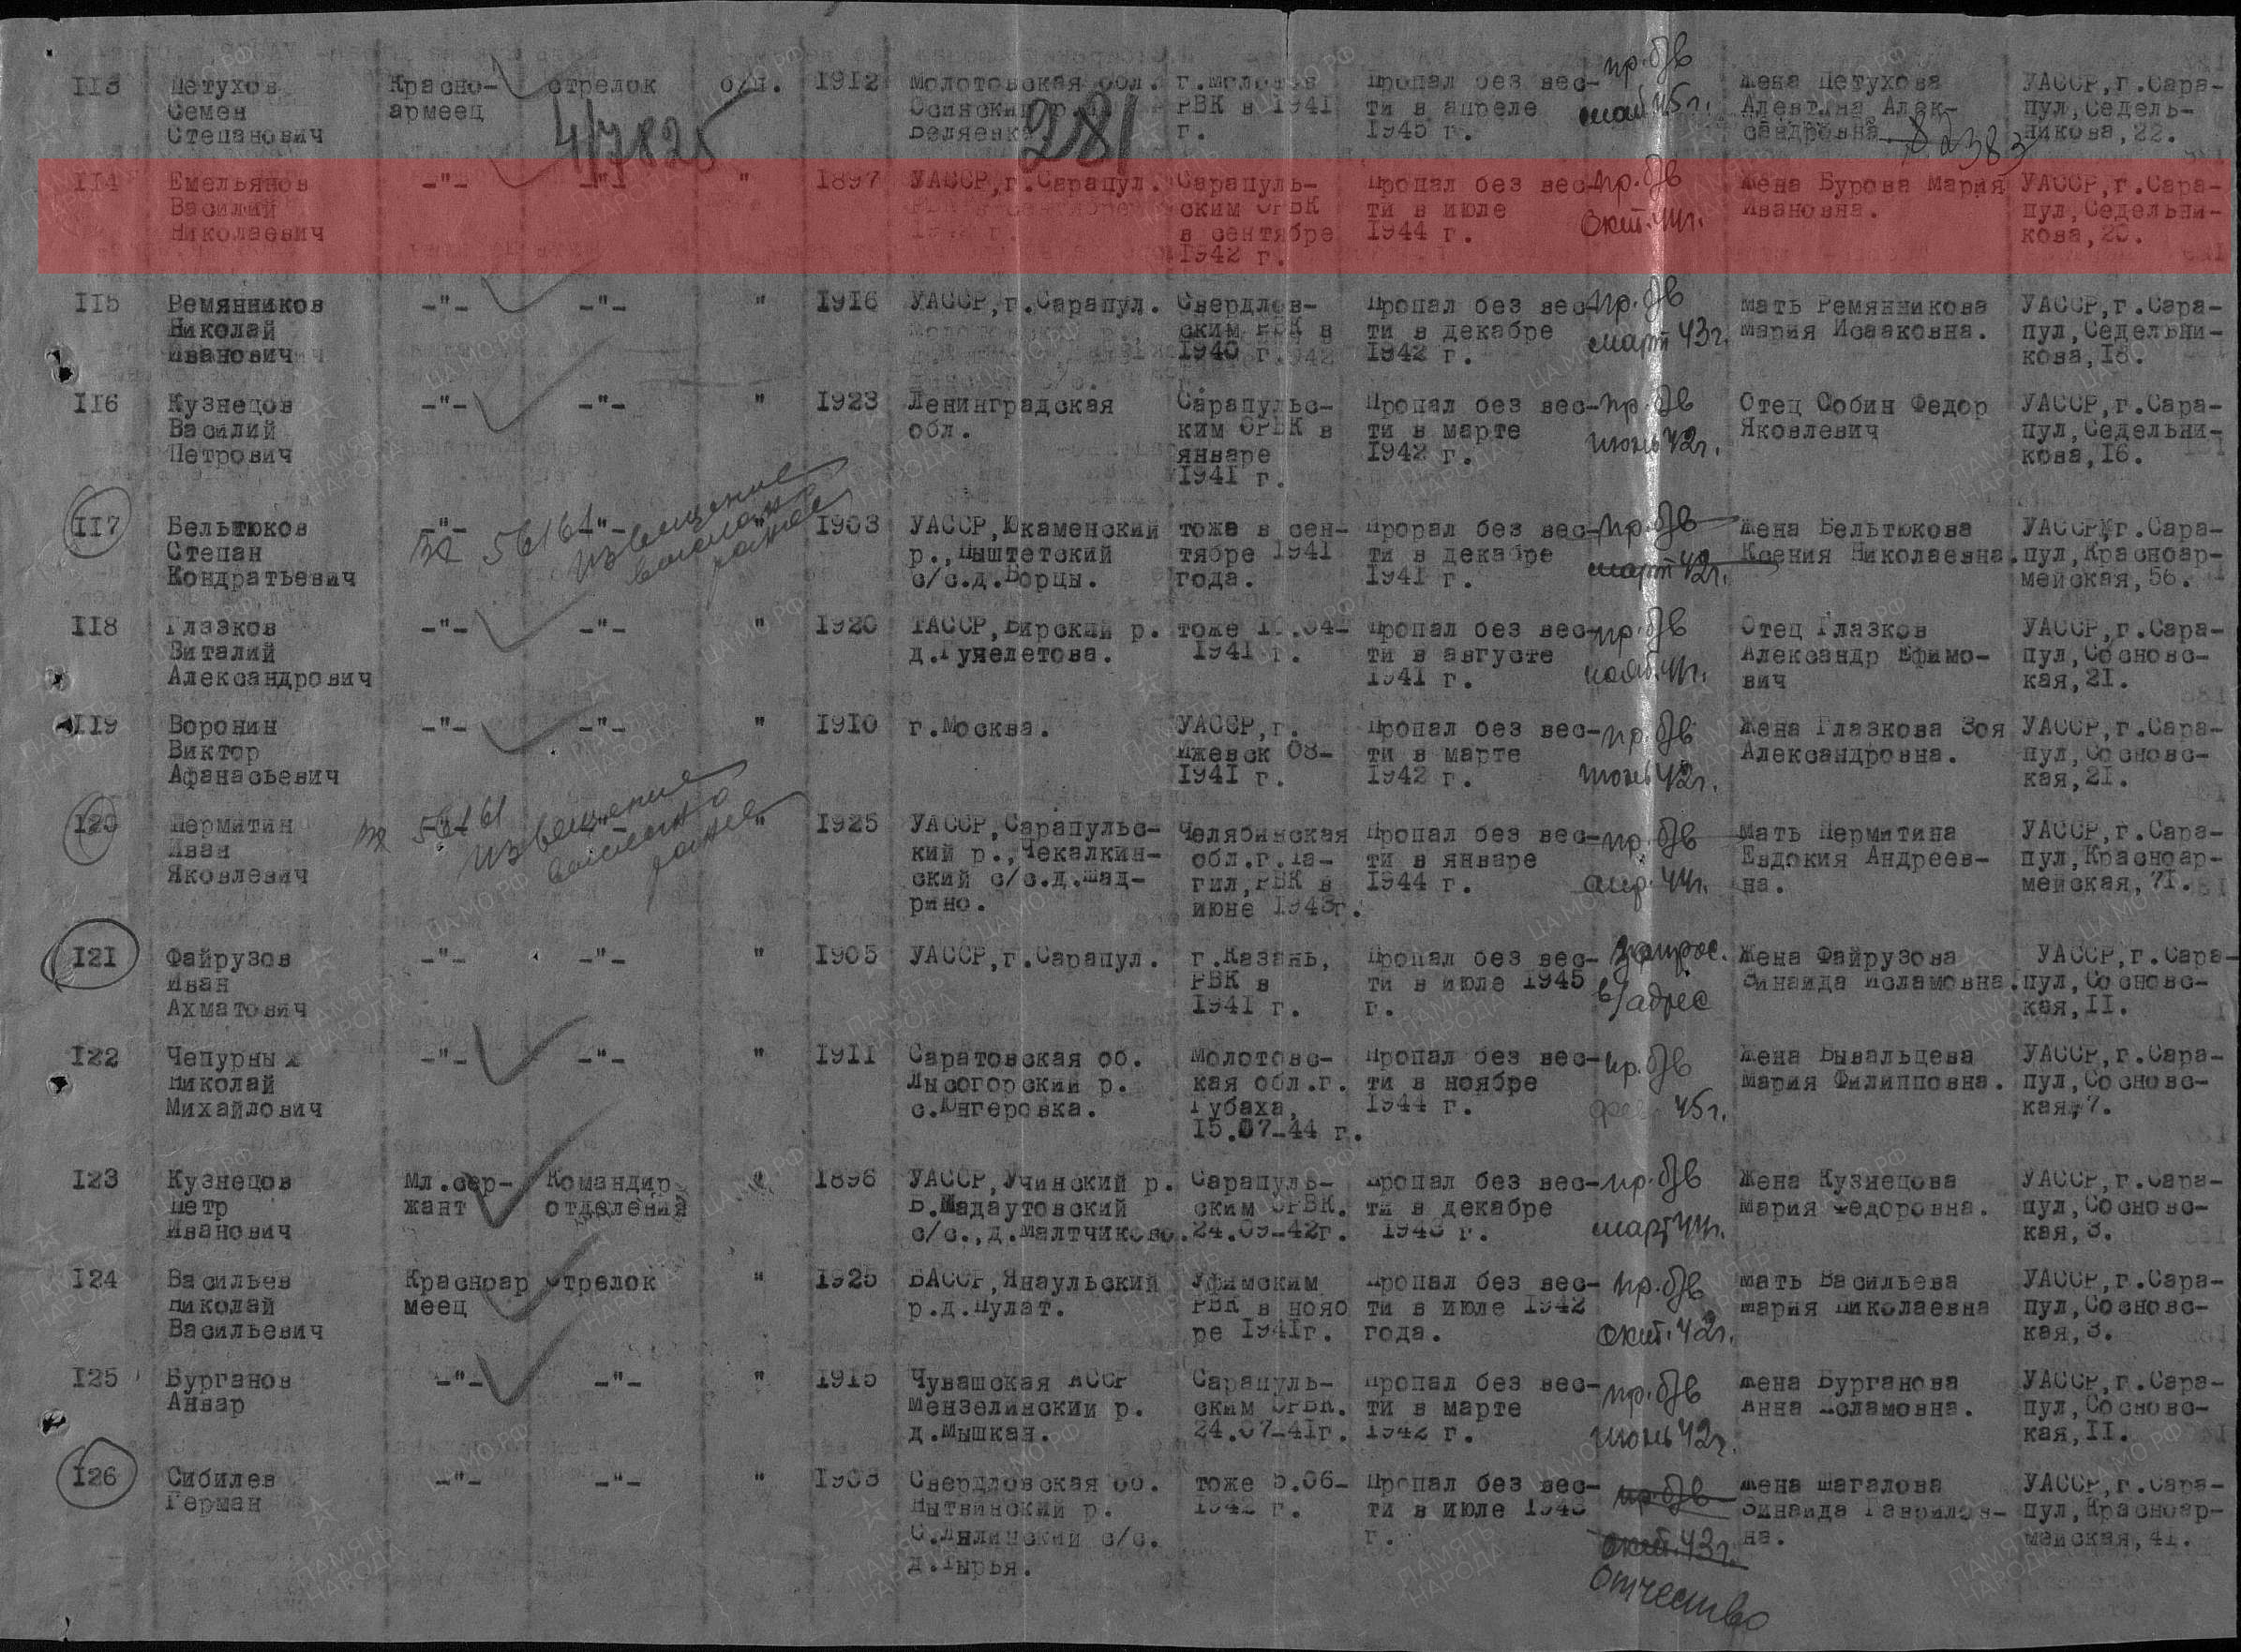 Лист донесения послевоенного периода, уточняющего потери, 27.09.1946